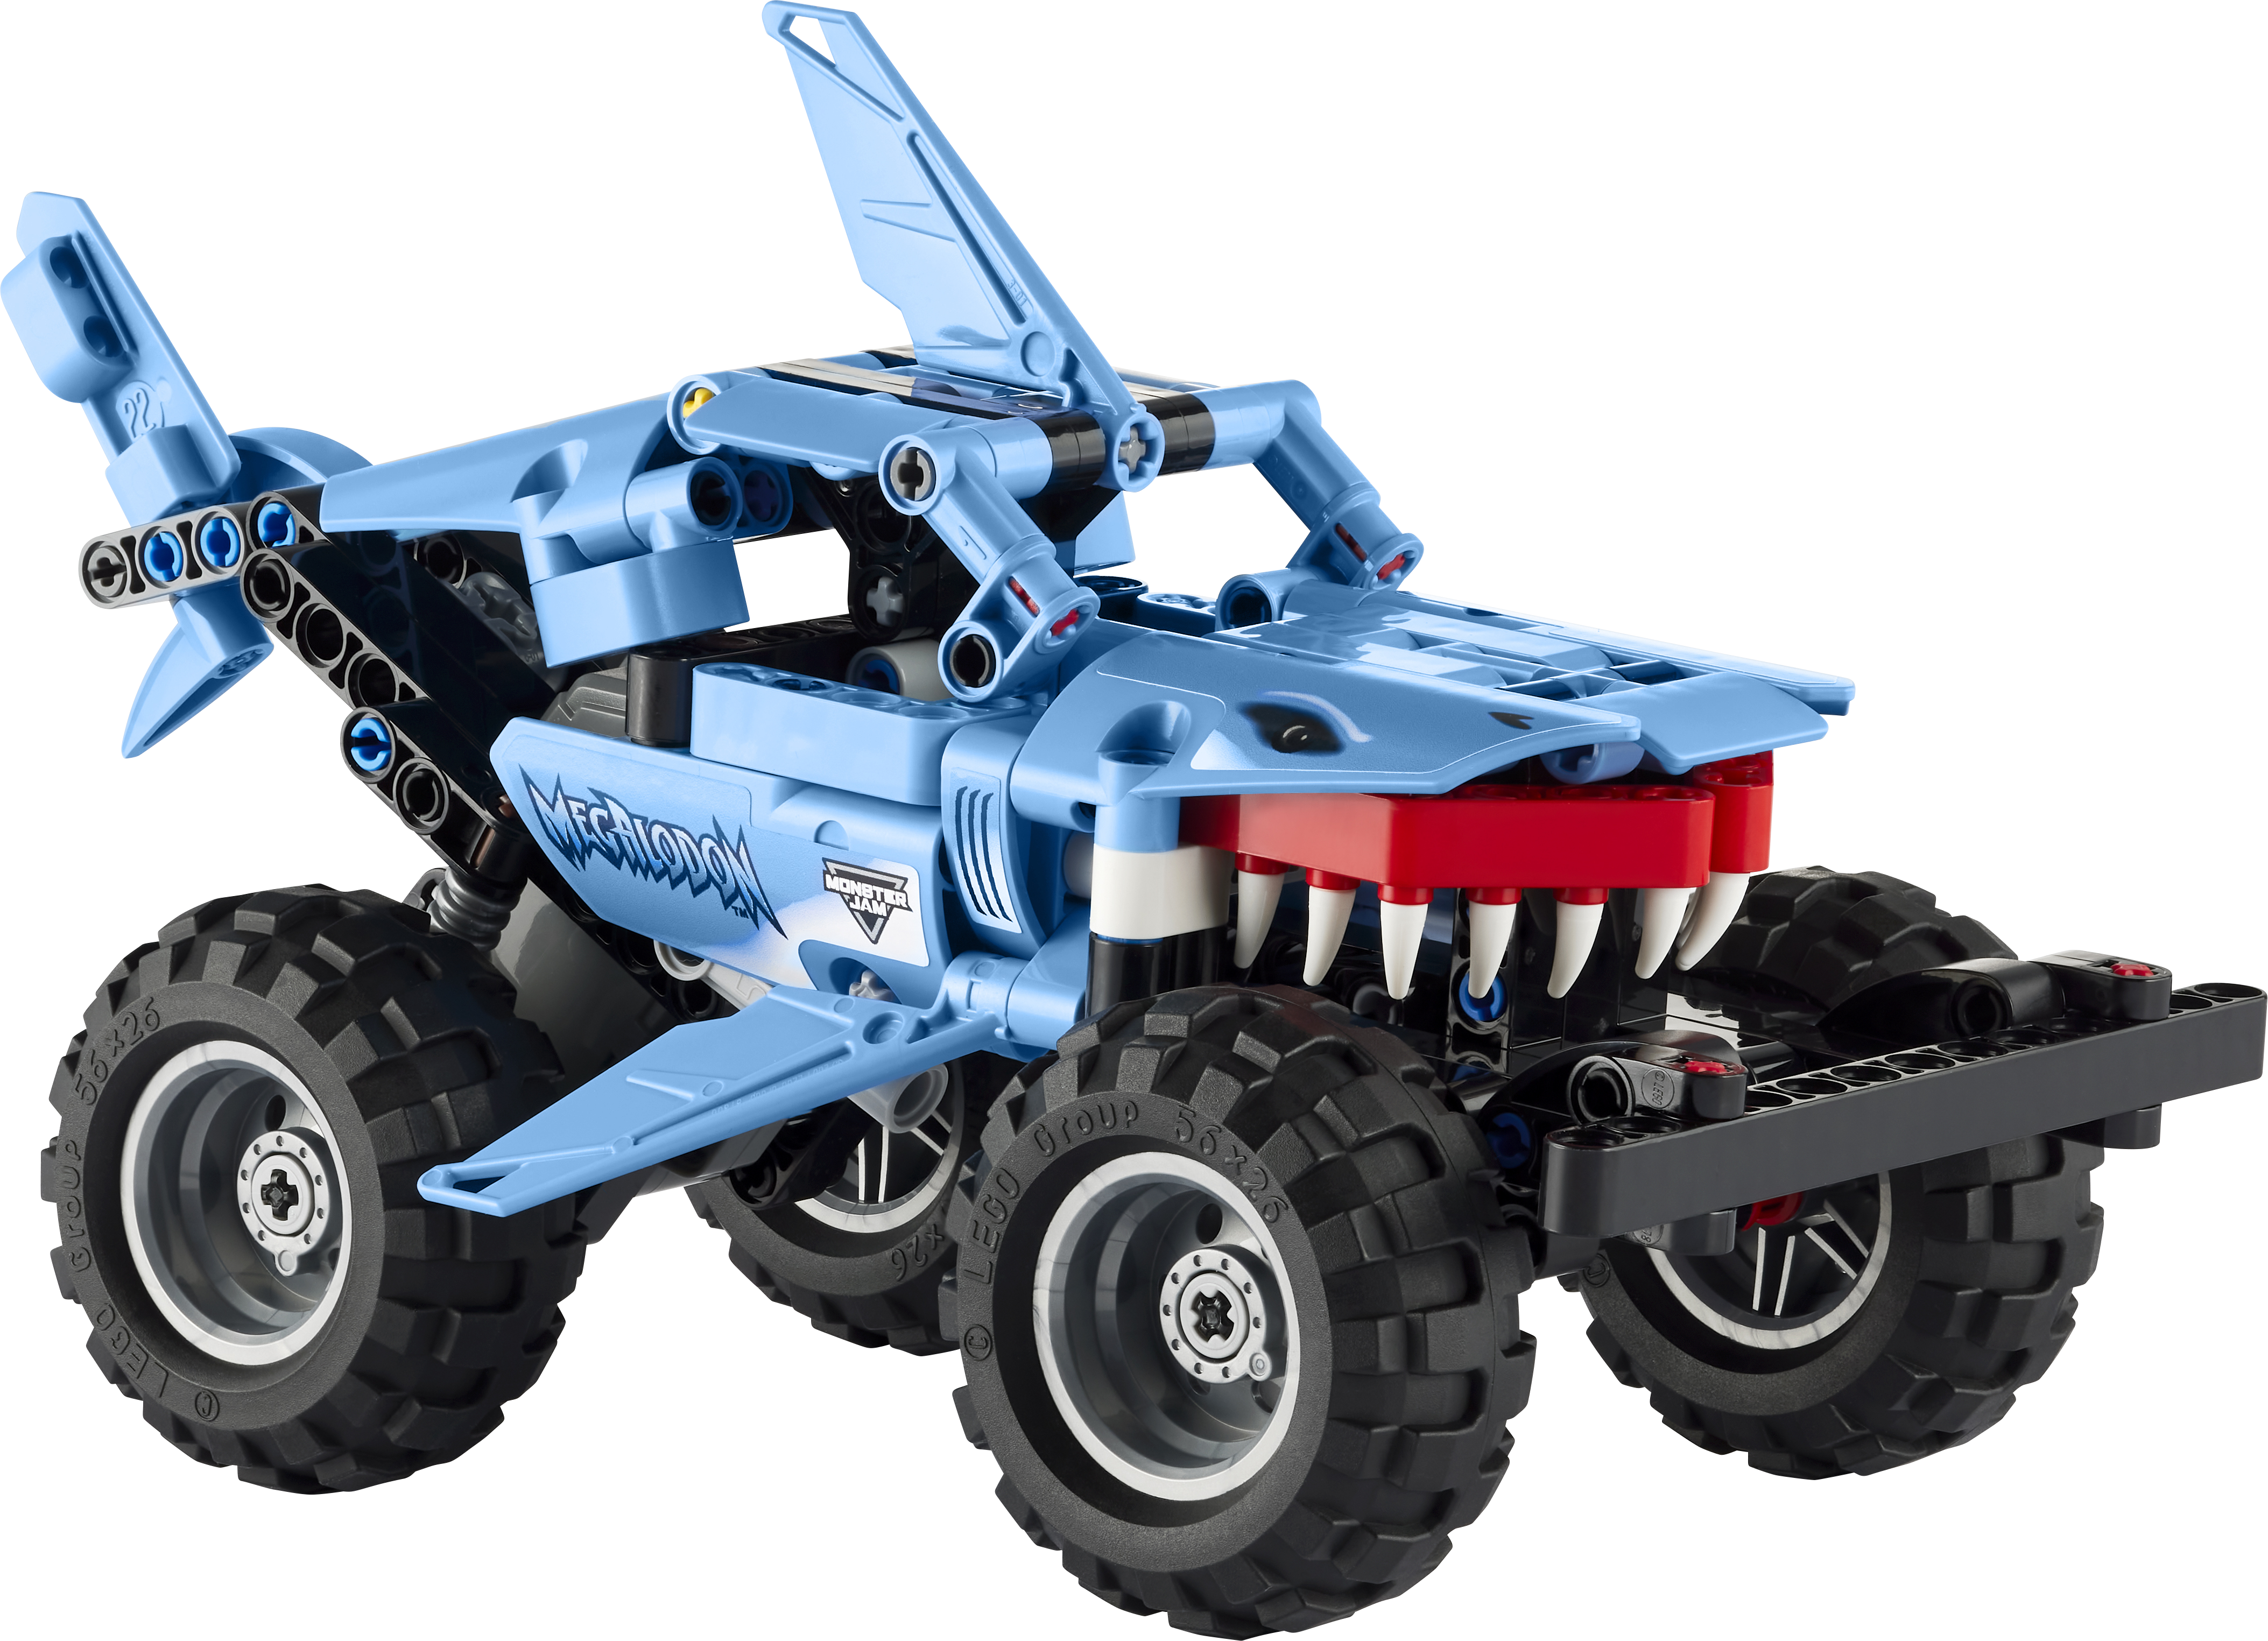 LEGO® Technic 42134 Monster Jam™ Megalodon™